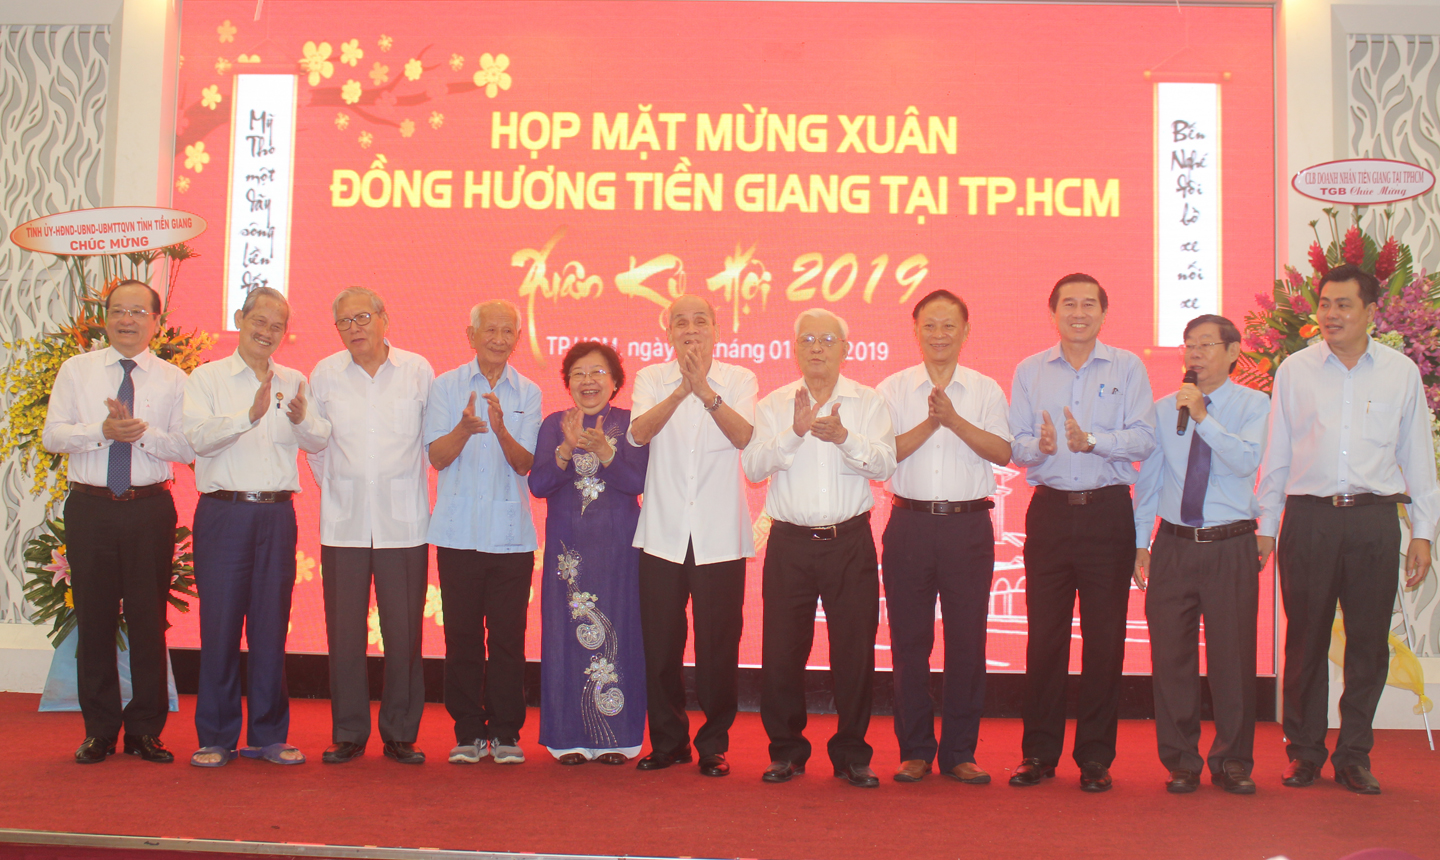 Đồng chí Lê Văn Hưởng chụp ảnh lưu niệm cùng Ban Liên lạc đồng hương  Tiền Giang tại TP. Hồ Chí Minh.